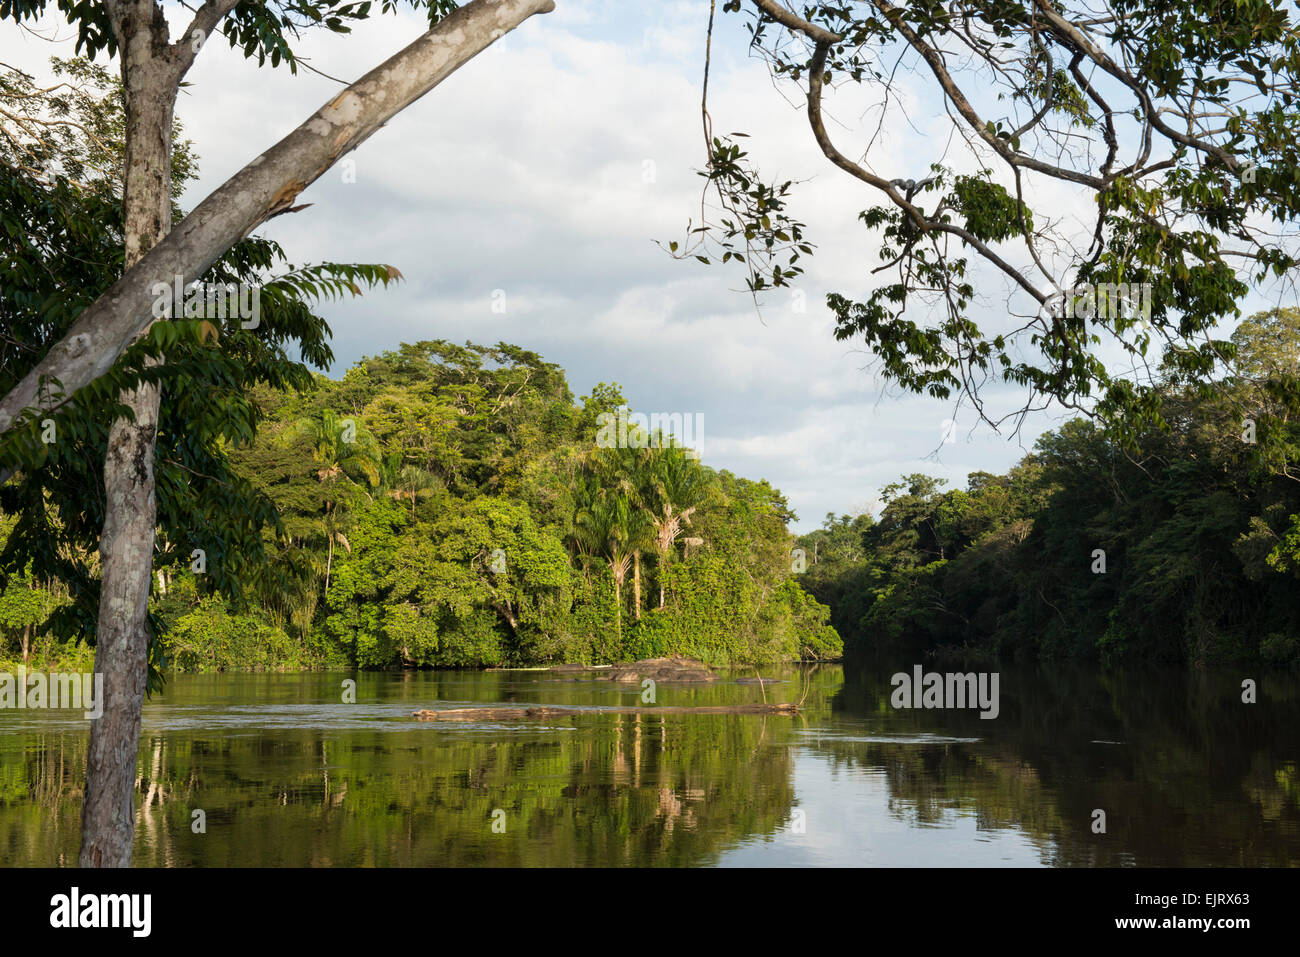 The Upper Suriname River, Suriname Stock Photo